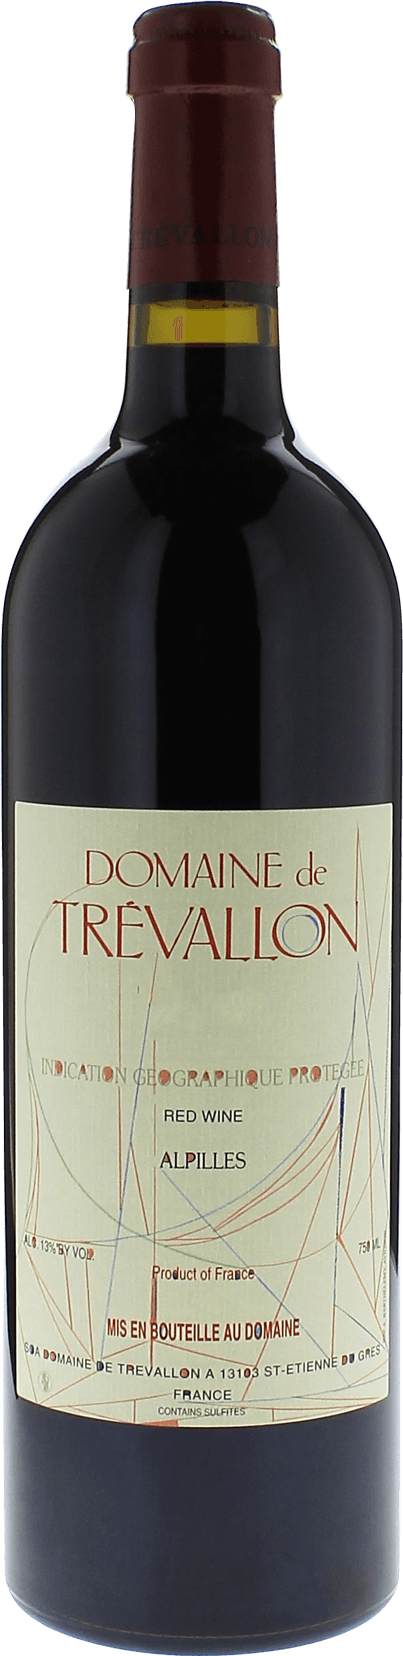 Domaine de trevallon rouge 2014  Vin de Pays, Provence